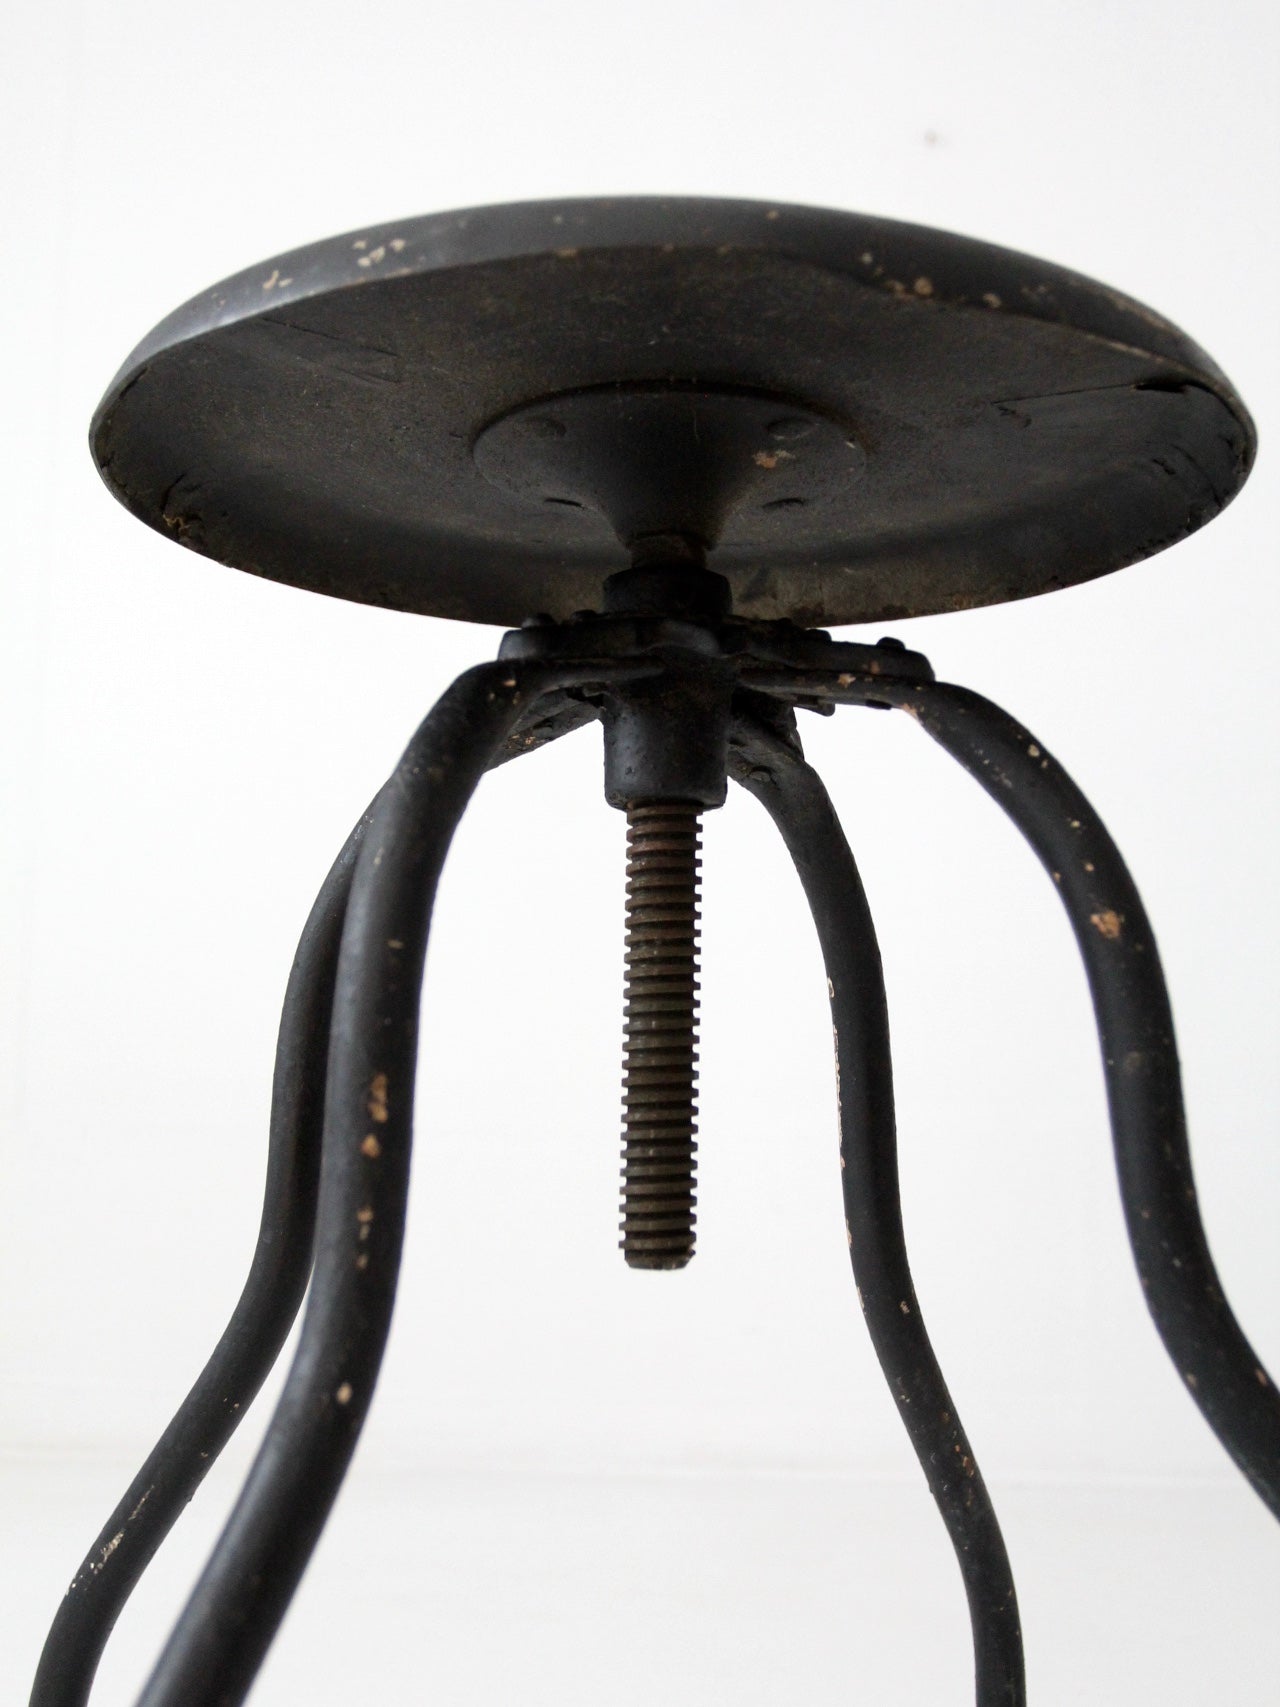 vintage adjustable industrial stool